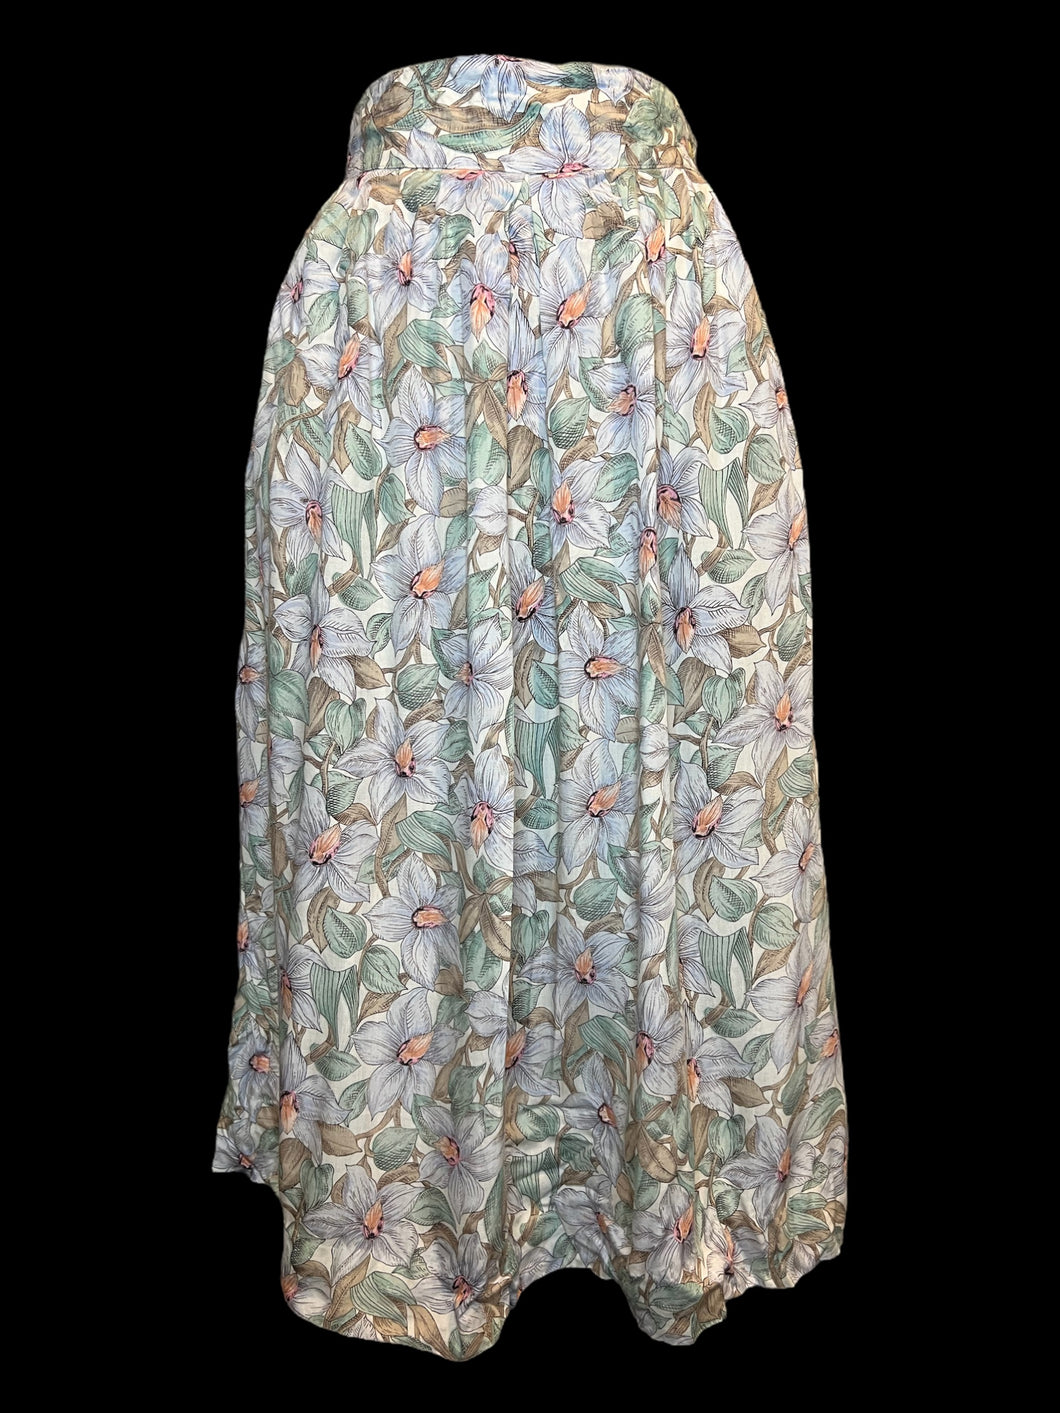 S Vintage 70s off-white & multicolor pastel floral midi skirt w/ elastic waist, & double button closure